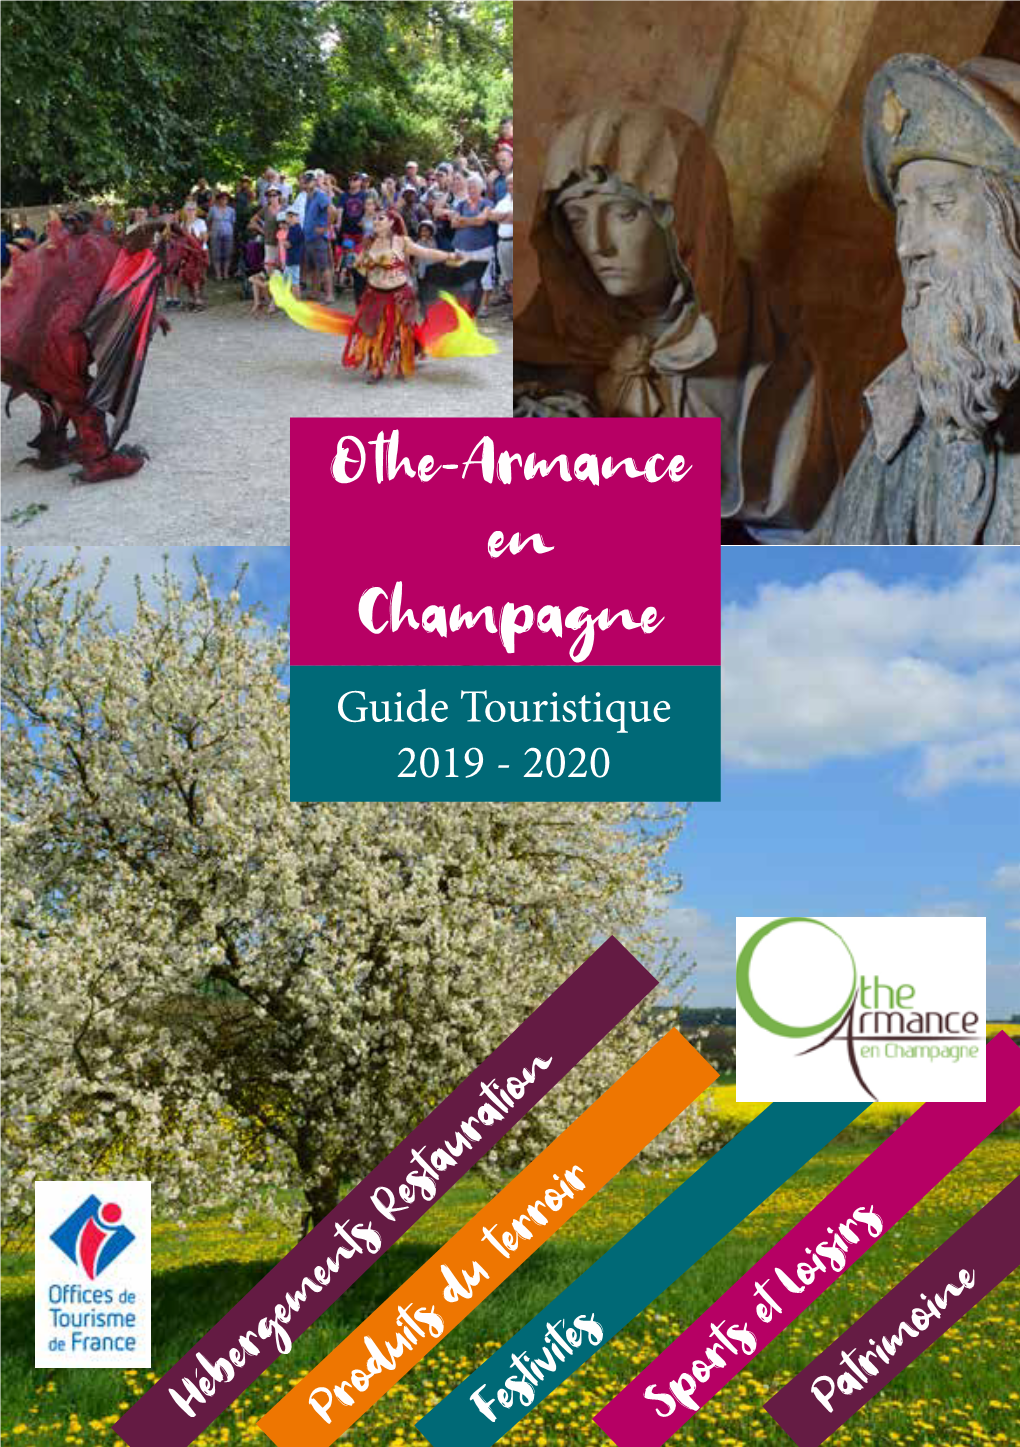 Guide Touristique 2019 - 2020